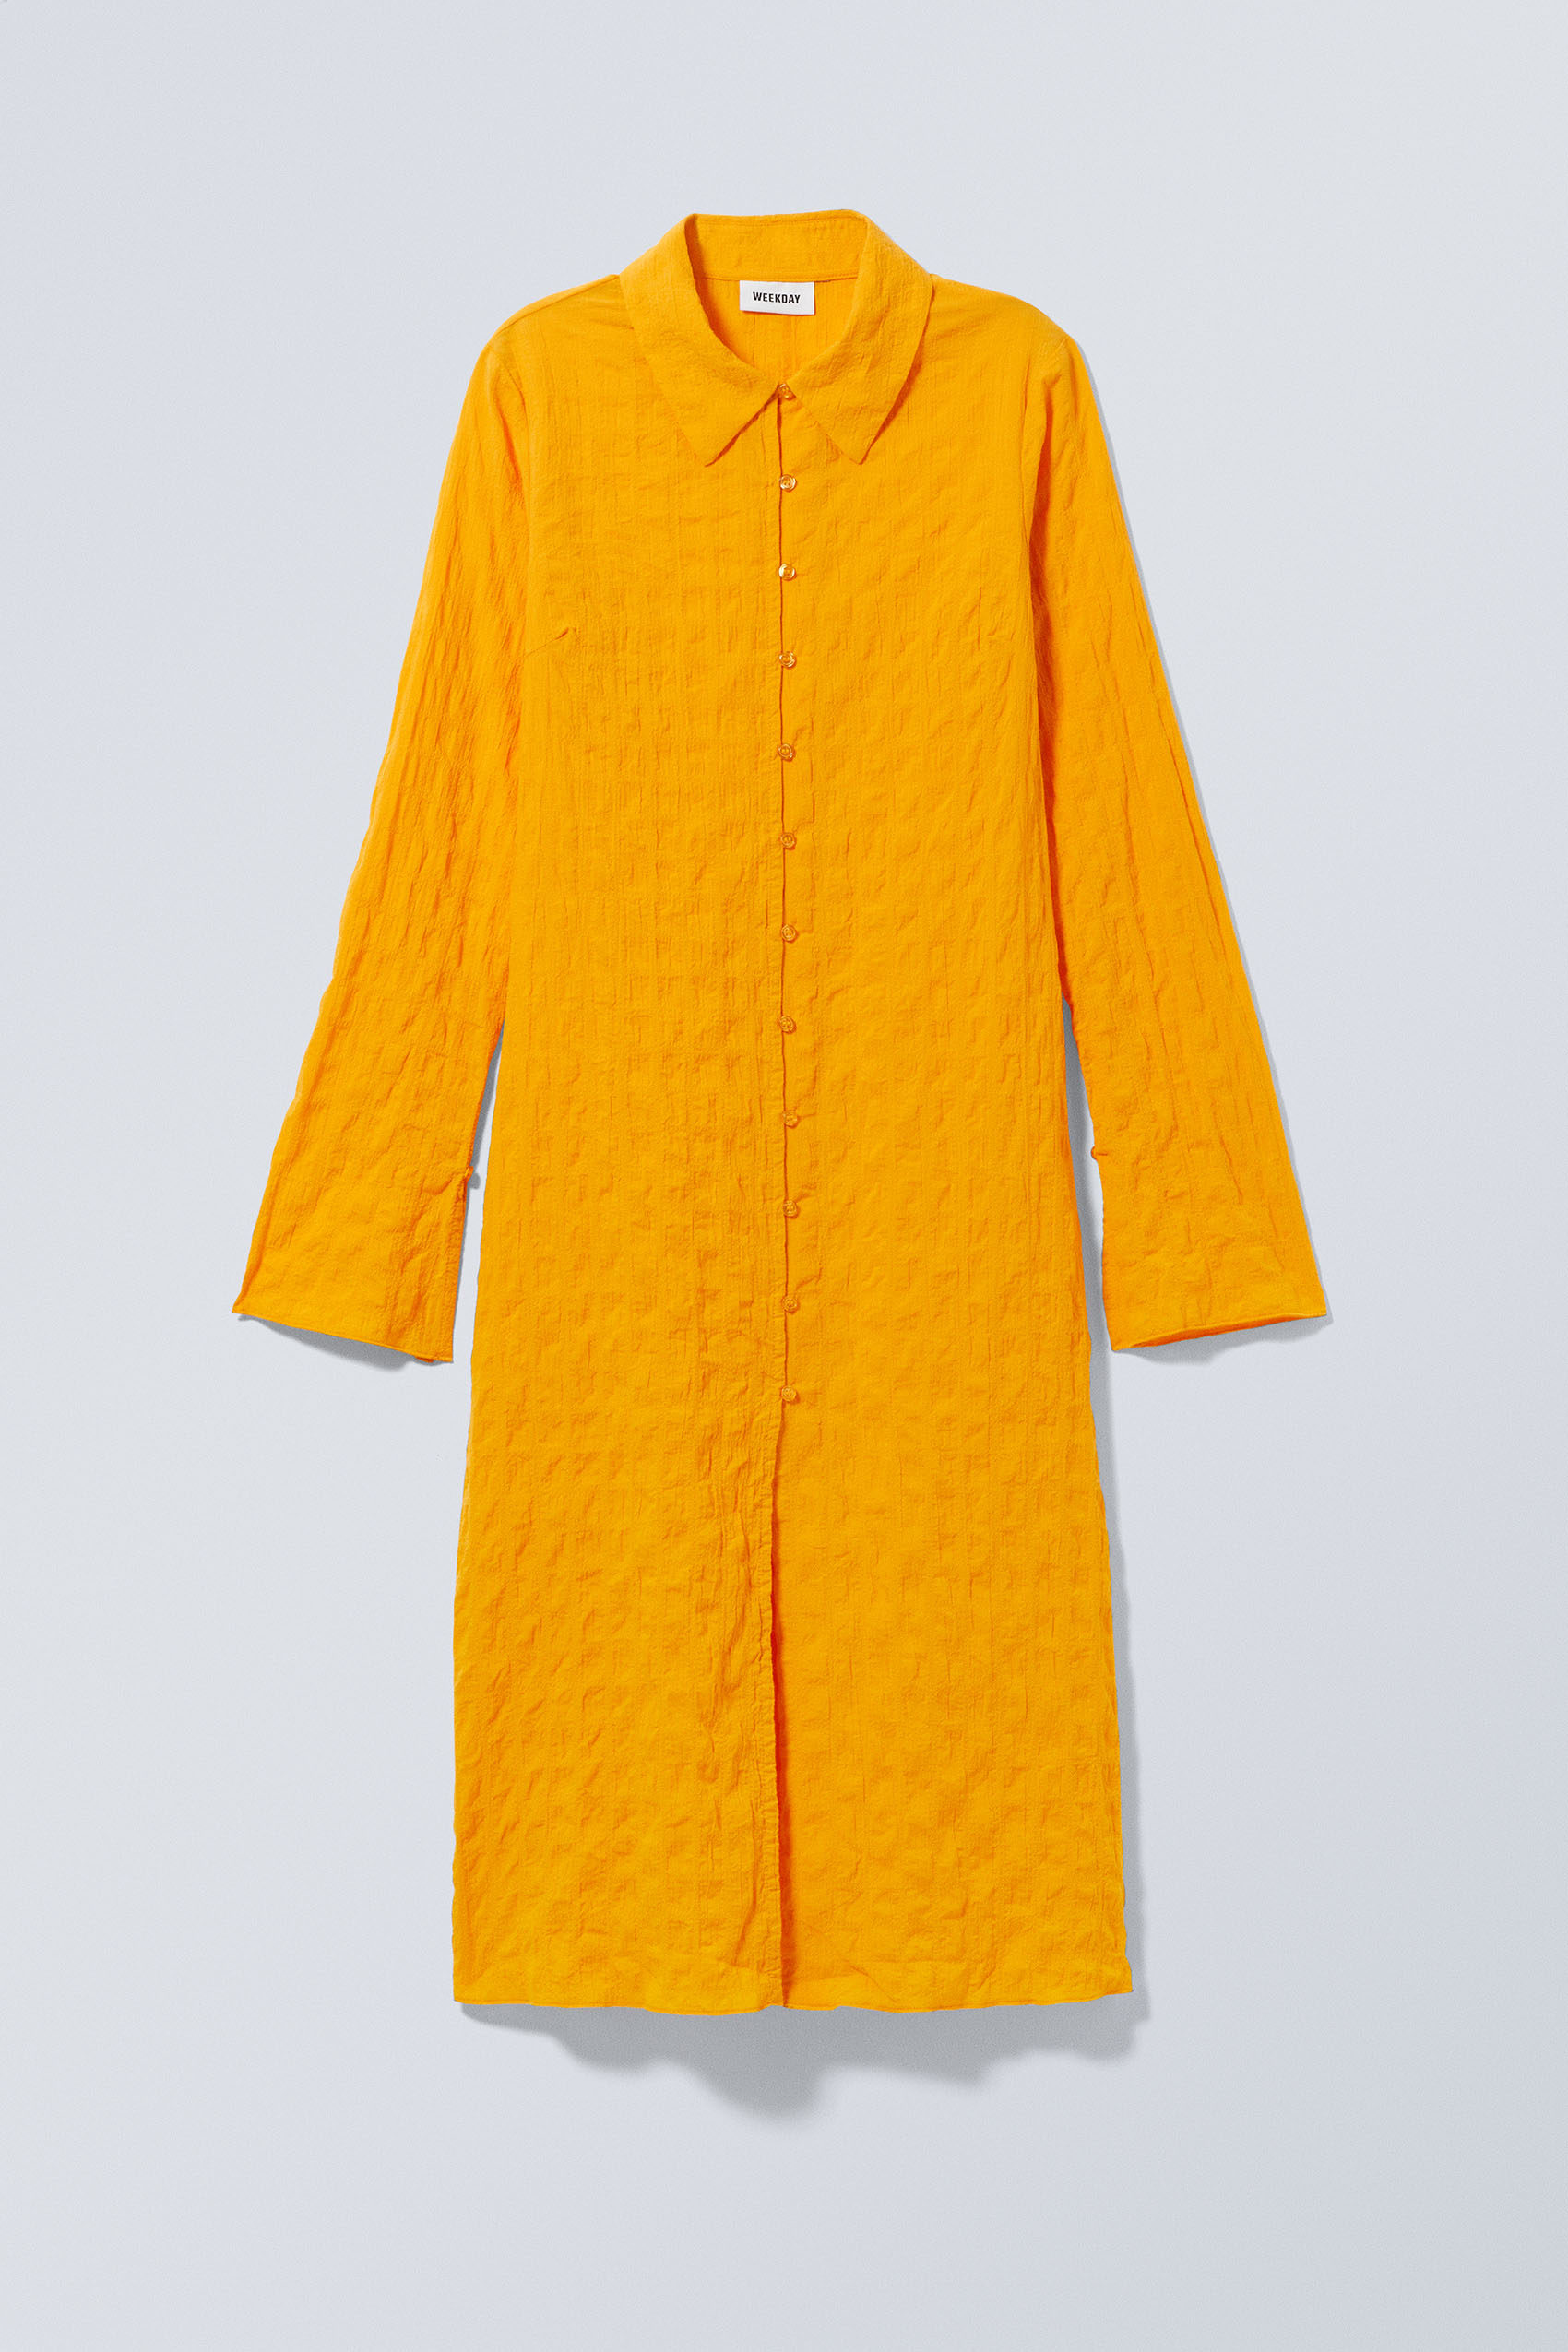 Weekday Gesmoktes Hemdkleid Gelb, Alltagskleider in Größe XS. Farbe: Yellow von Weekday